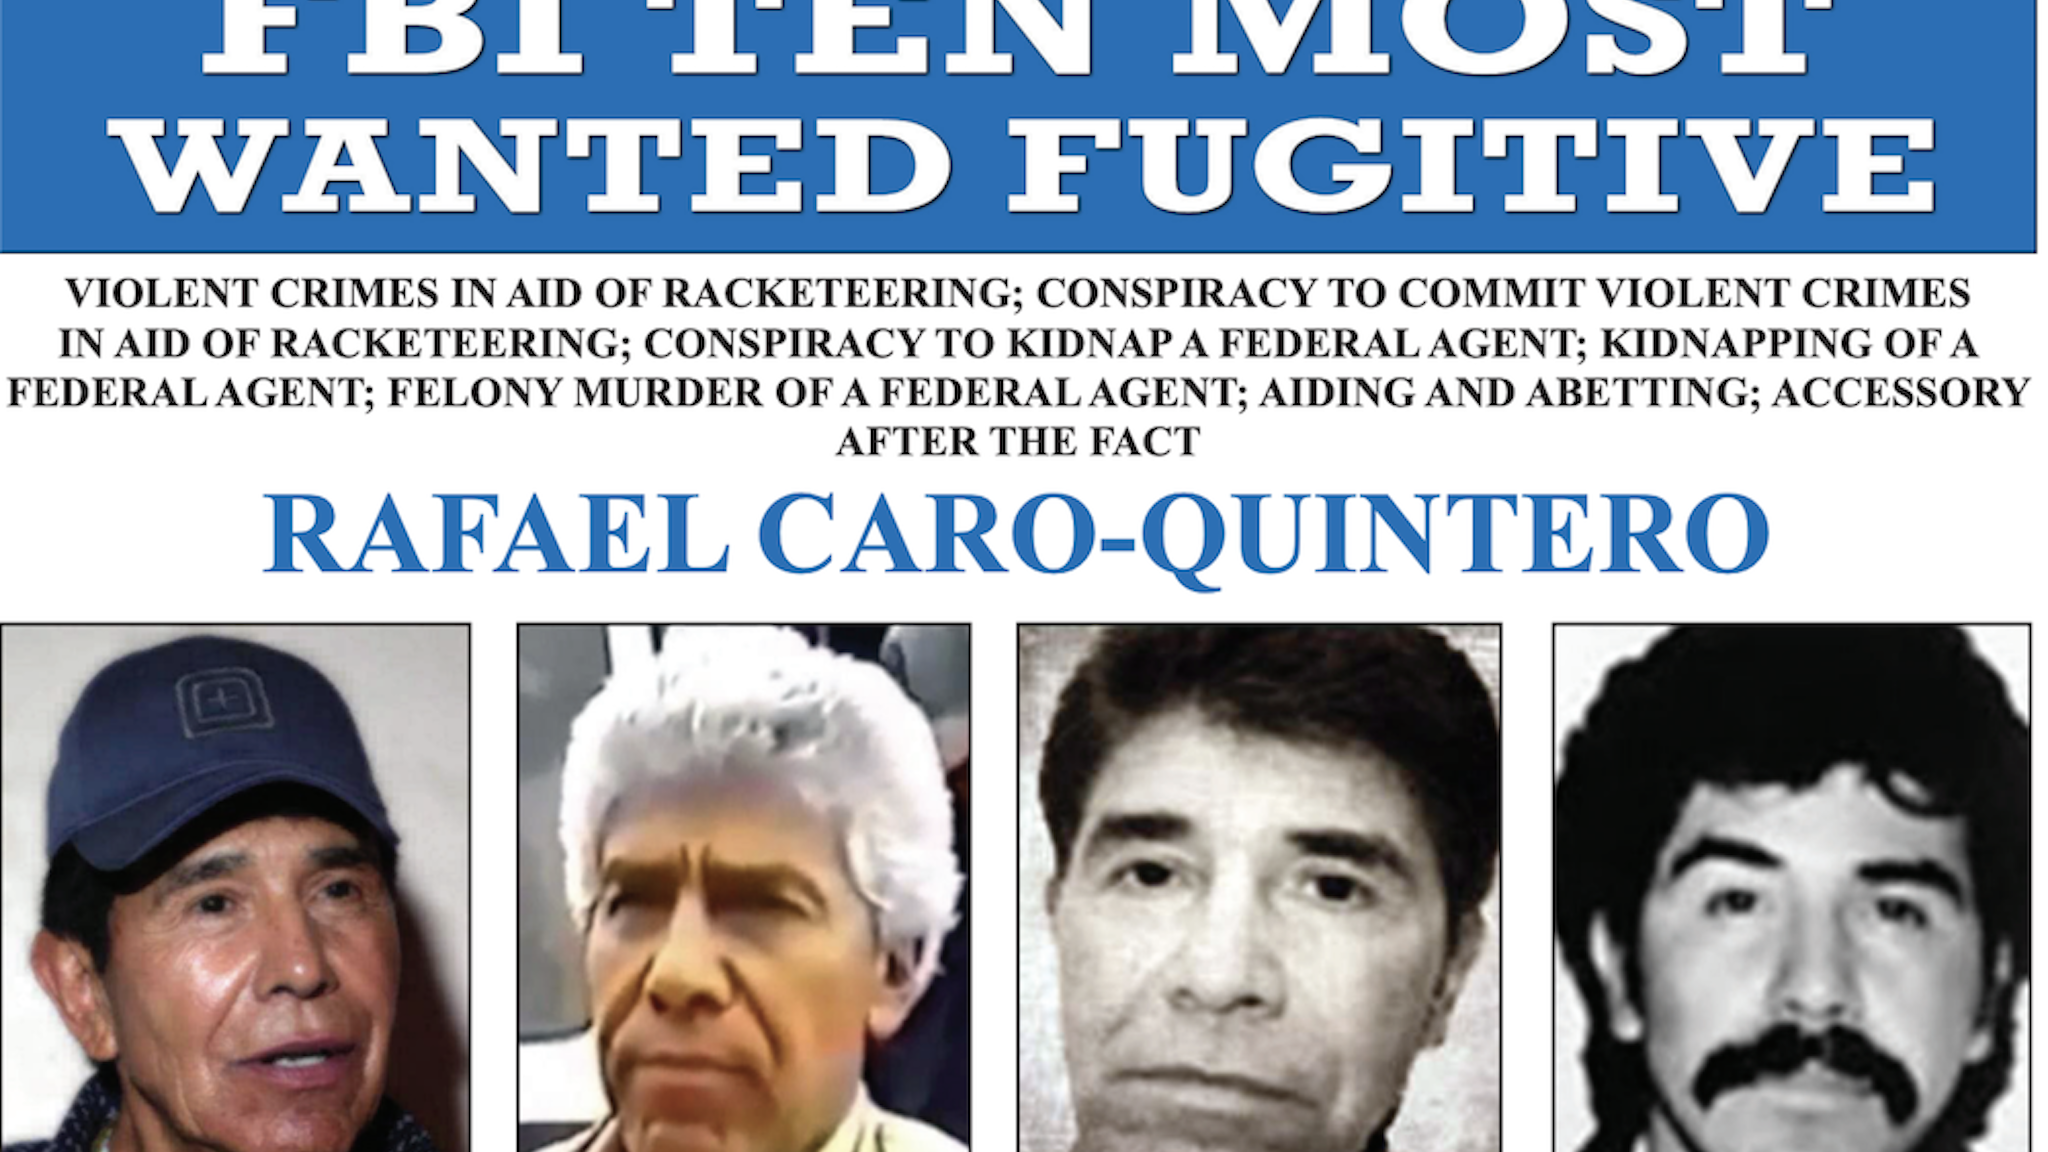 Screenshot/FBI Ten Most Wanted Fugitives